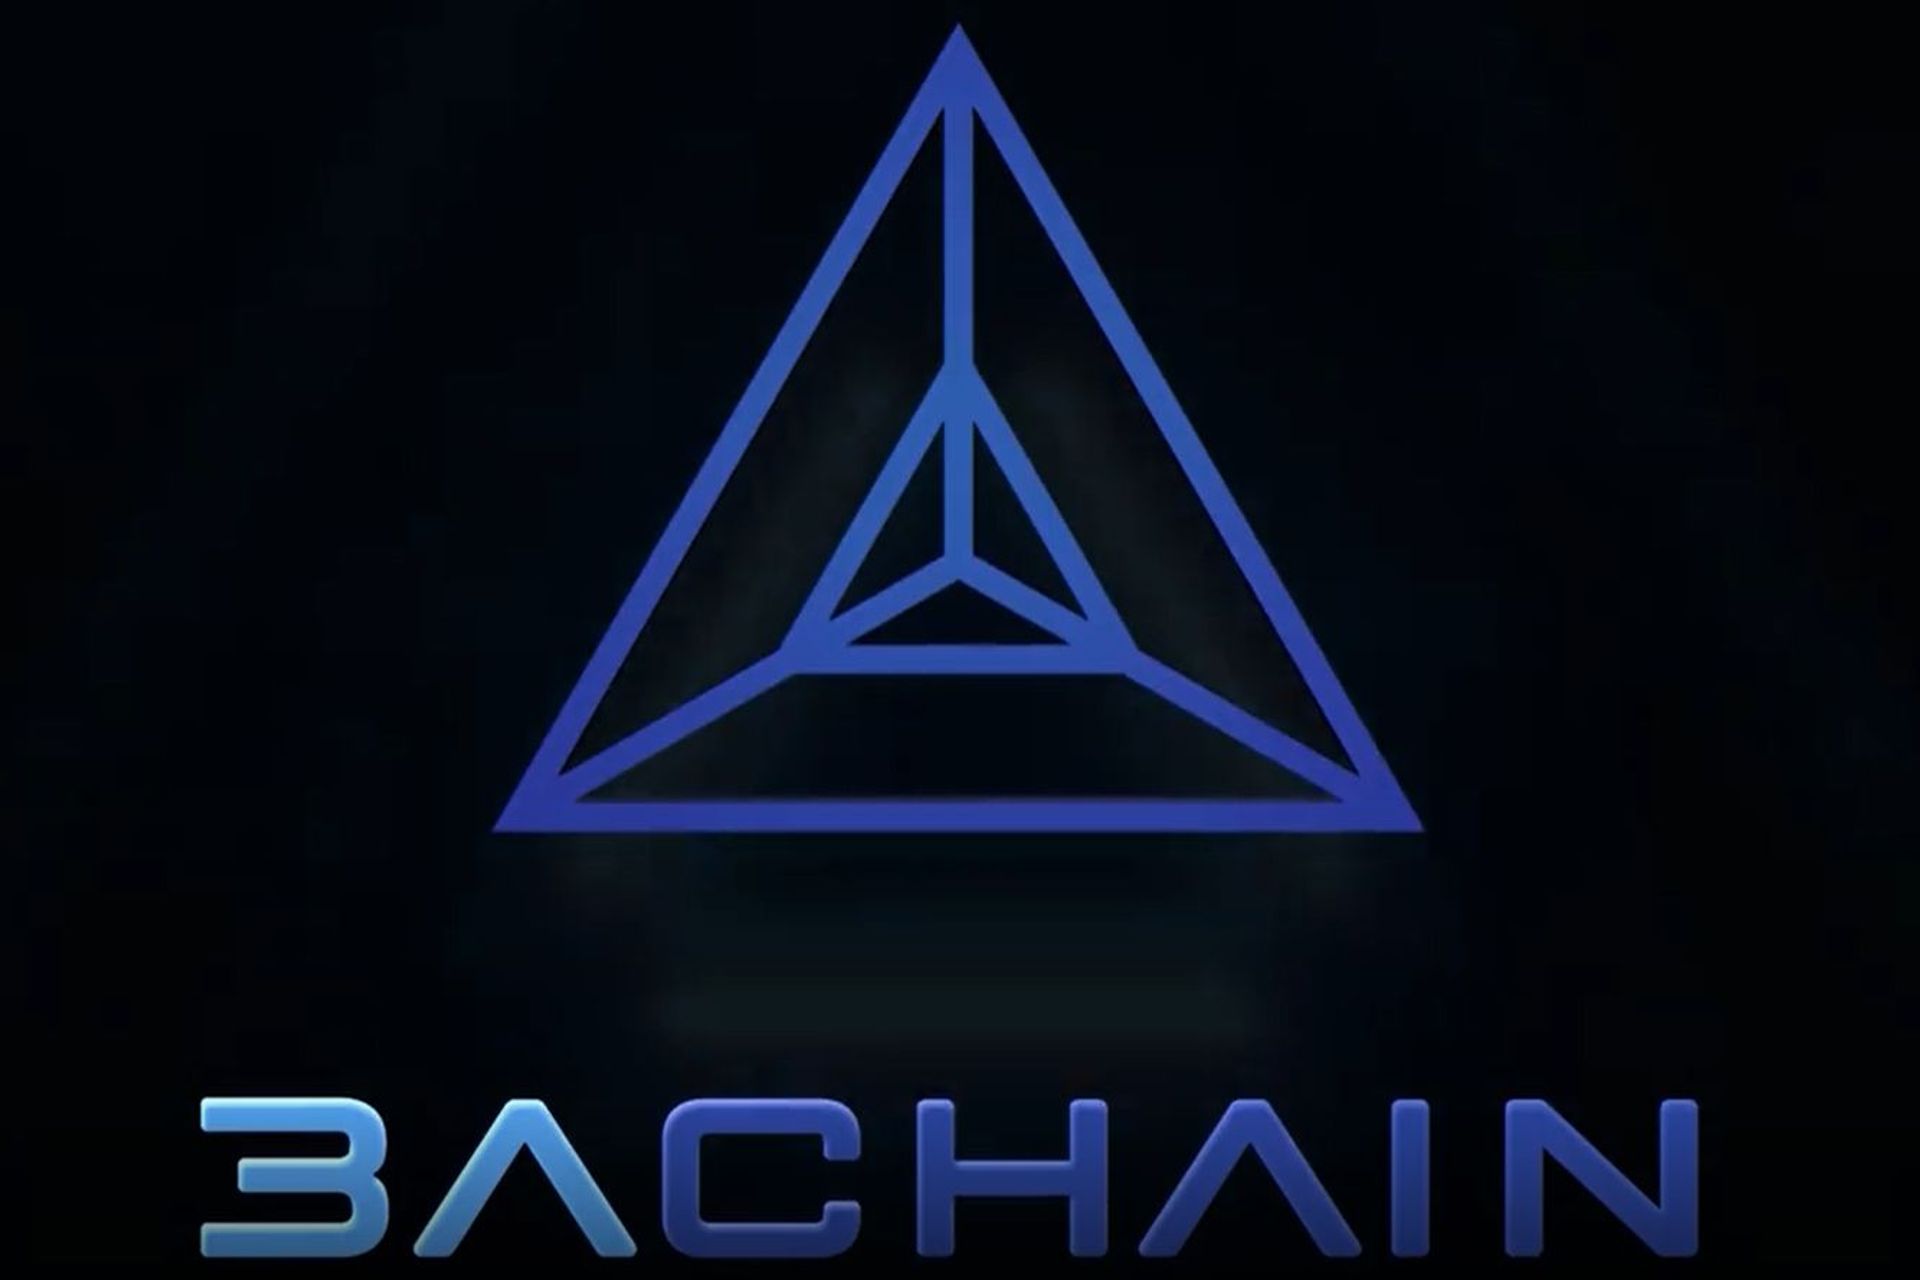 הלוגו של הבלוקצ'יין A3chain שהשיקה עיריית לוגאנו